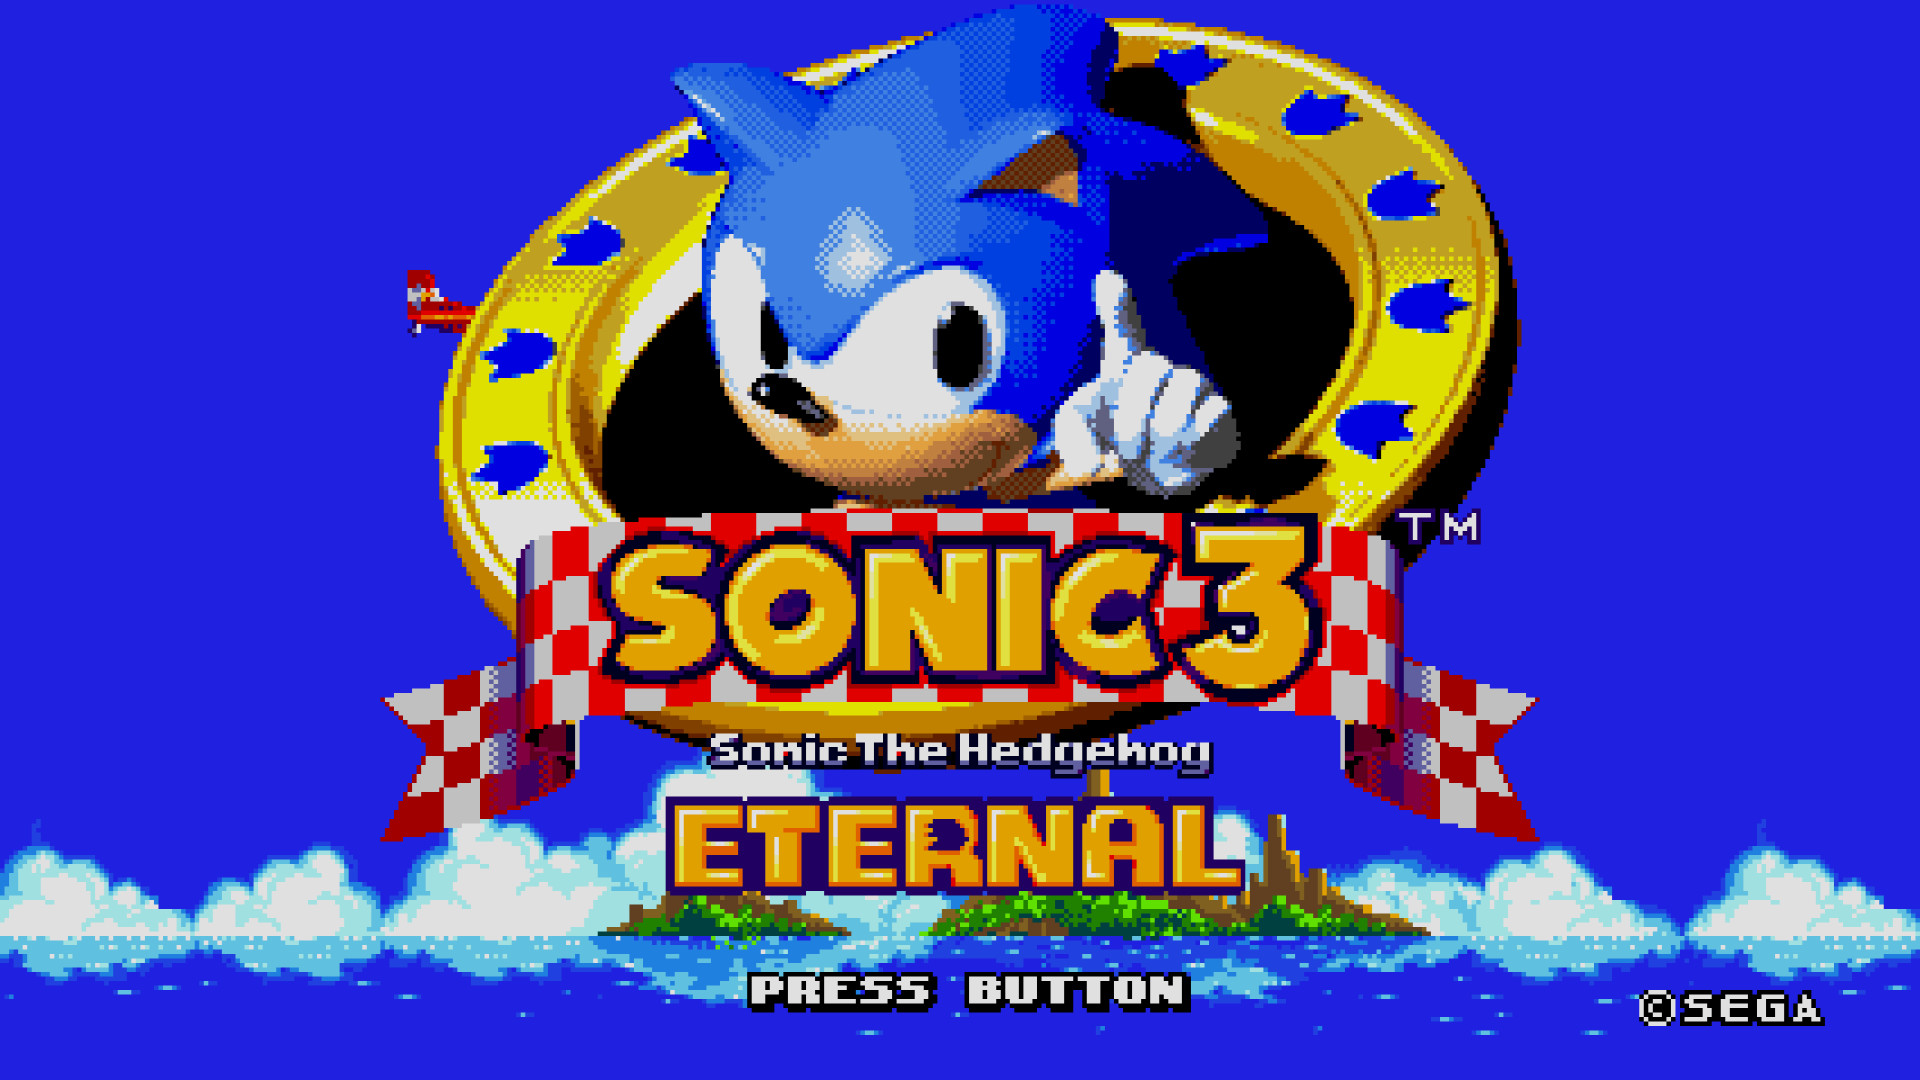 Sonic 3 Sega Mega Drive. Игра Sonic the Hedgehog 3. Соник 3 игра сега. Sonic 3 и НАКЛЗ. Sonic 3 mobile